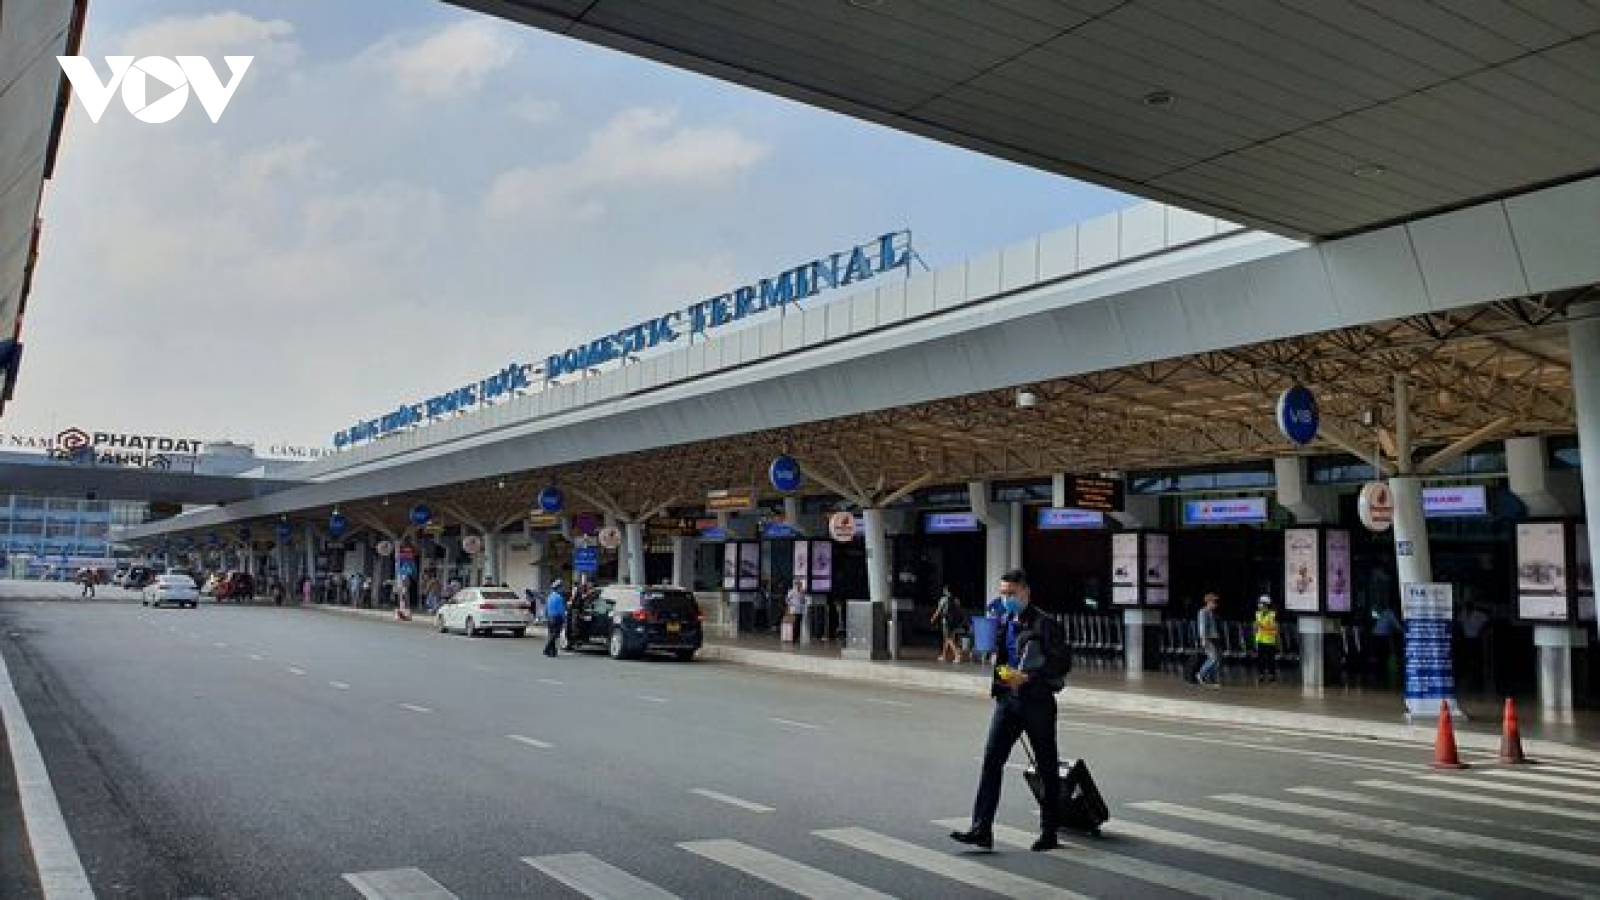 Phát hiện ca dương tính SARS-CoV-2 ở sân bay Tân Sơn Nhất qua xét nghiệm tầm soát